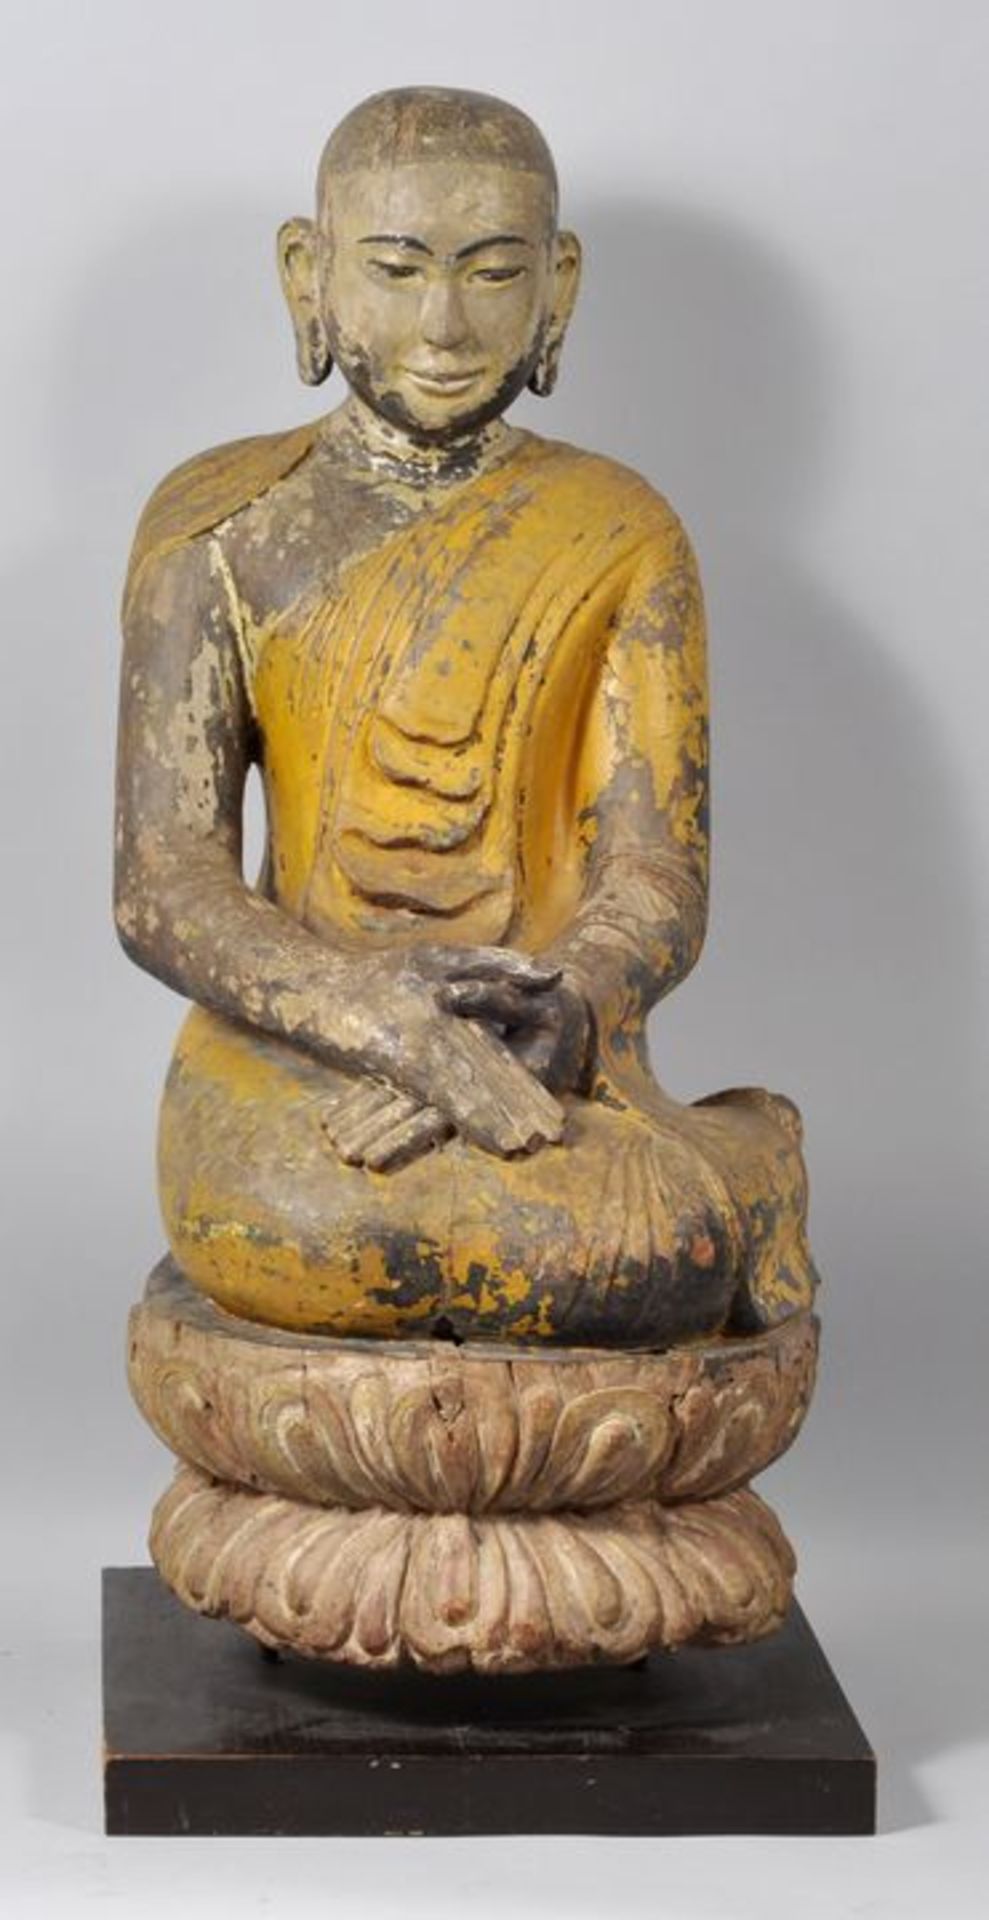 Figur des Maudgalyayana, Musterschüler Buddhas, Birma, 19. Jh. oder früherHolz, geschnitzt,